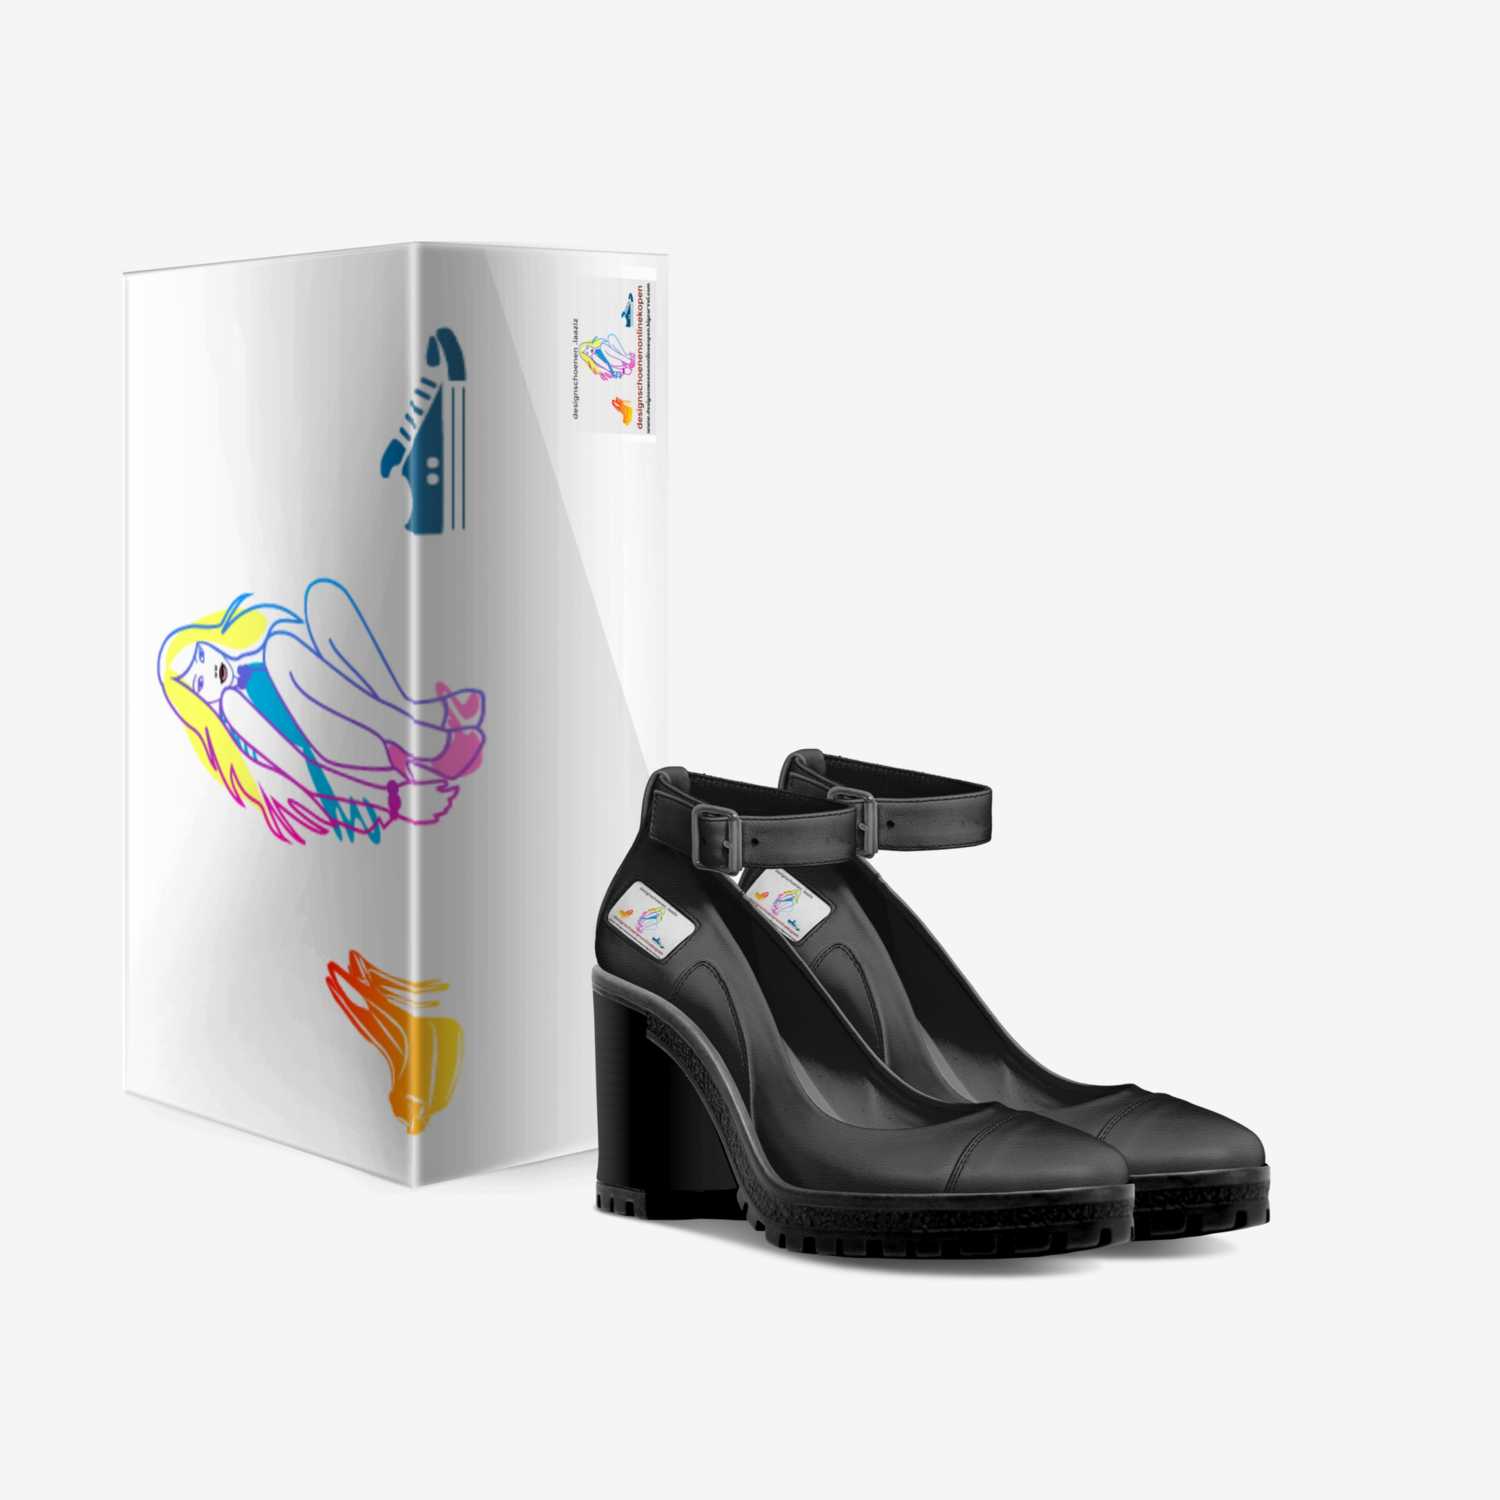 schoenen.laaziz custom made in Italy shoes by Laaziz Belgium | Box view